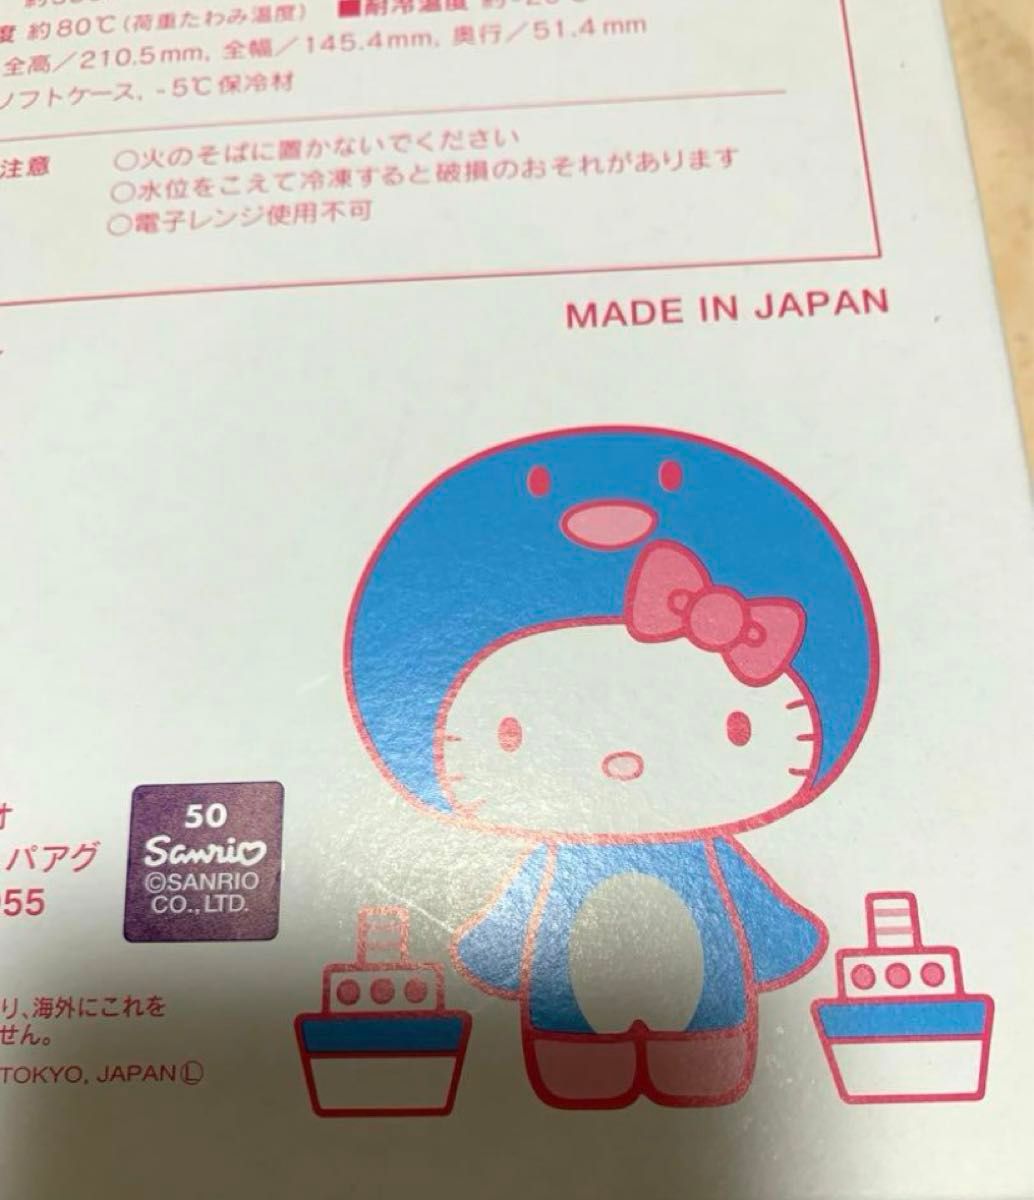 キティちゃん水筒　冷凍水筒　サンリオ　日本製　新品　ブックボトル　KITTY ハローキティー　キャラクターグッズ